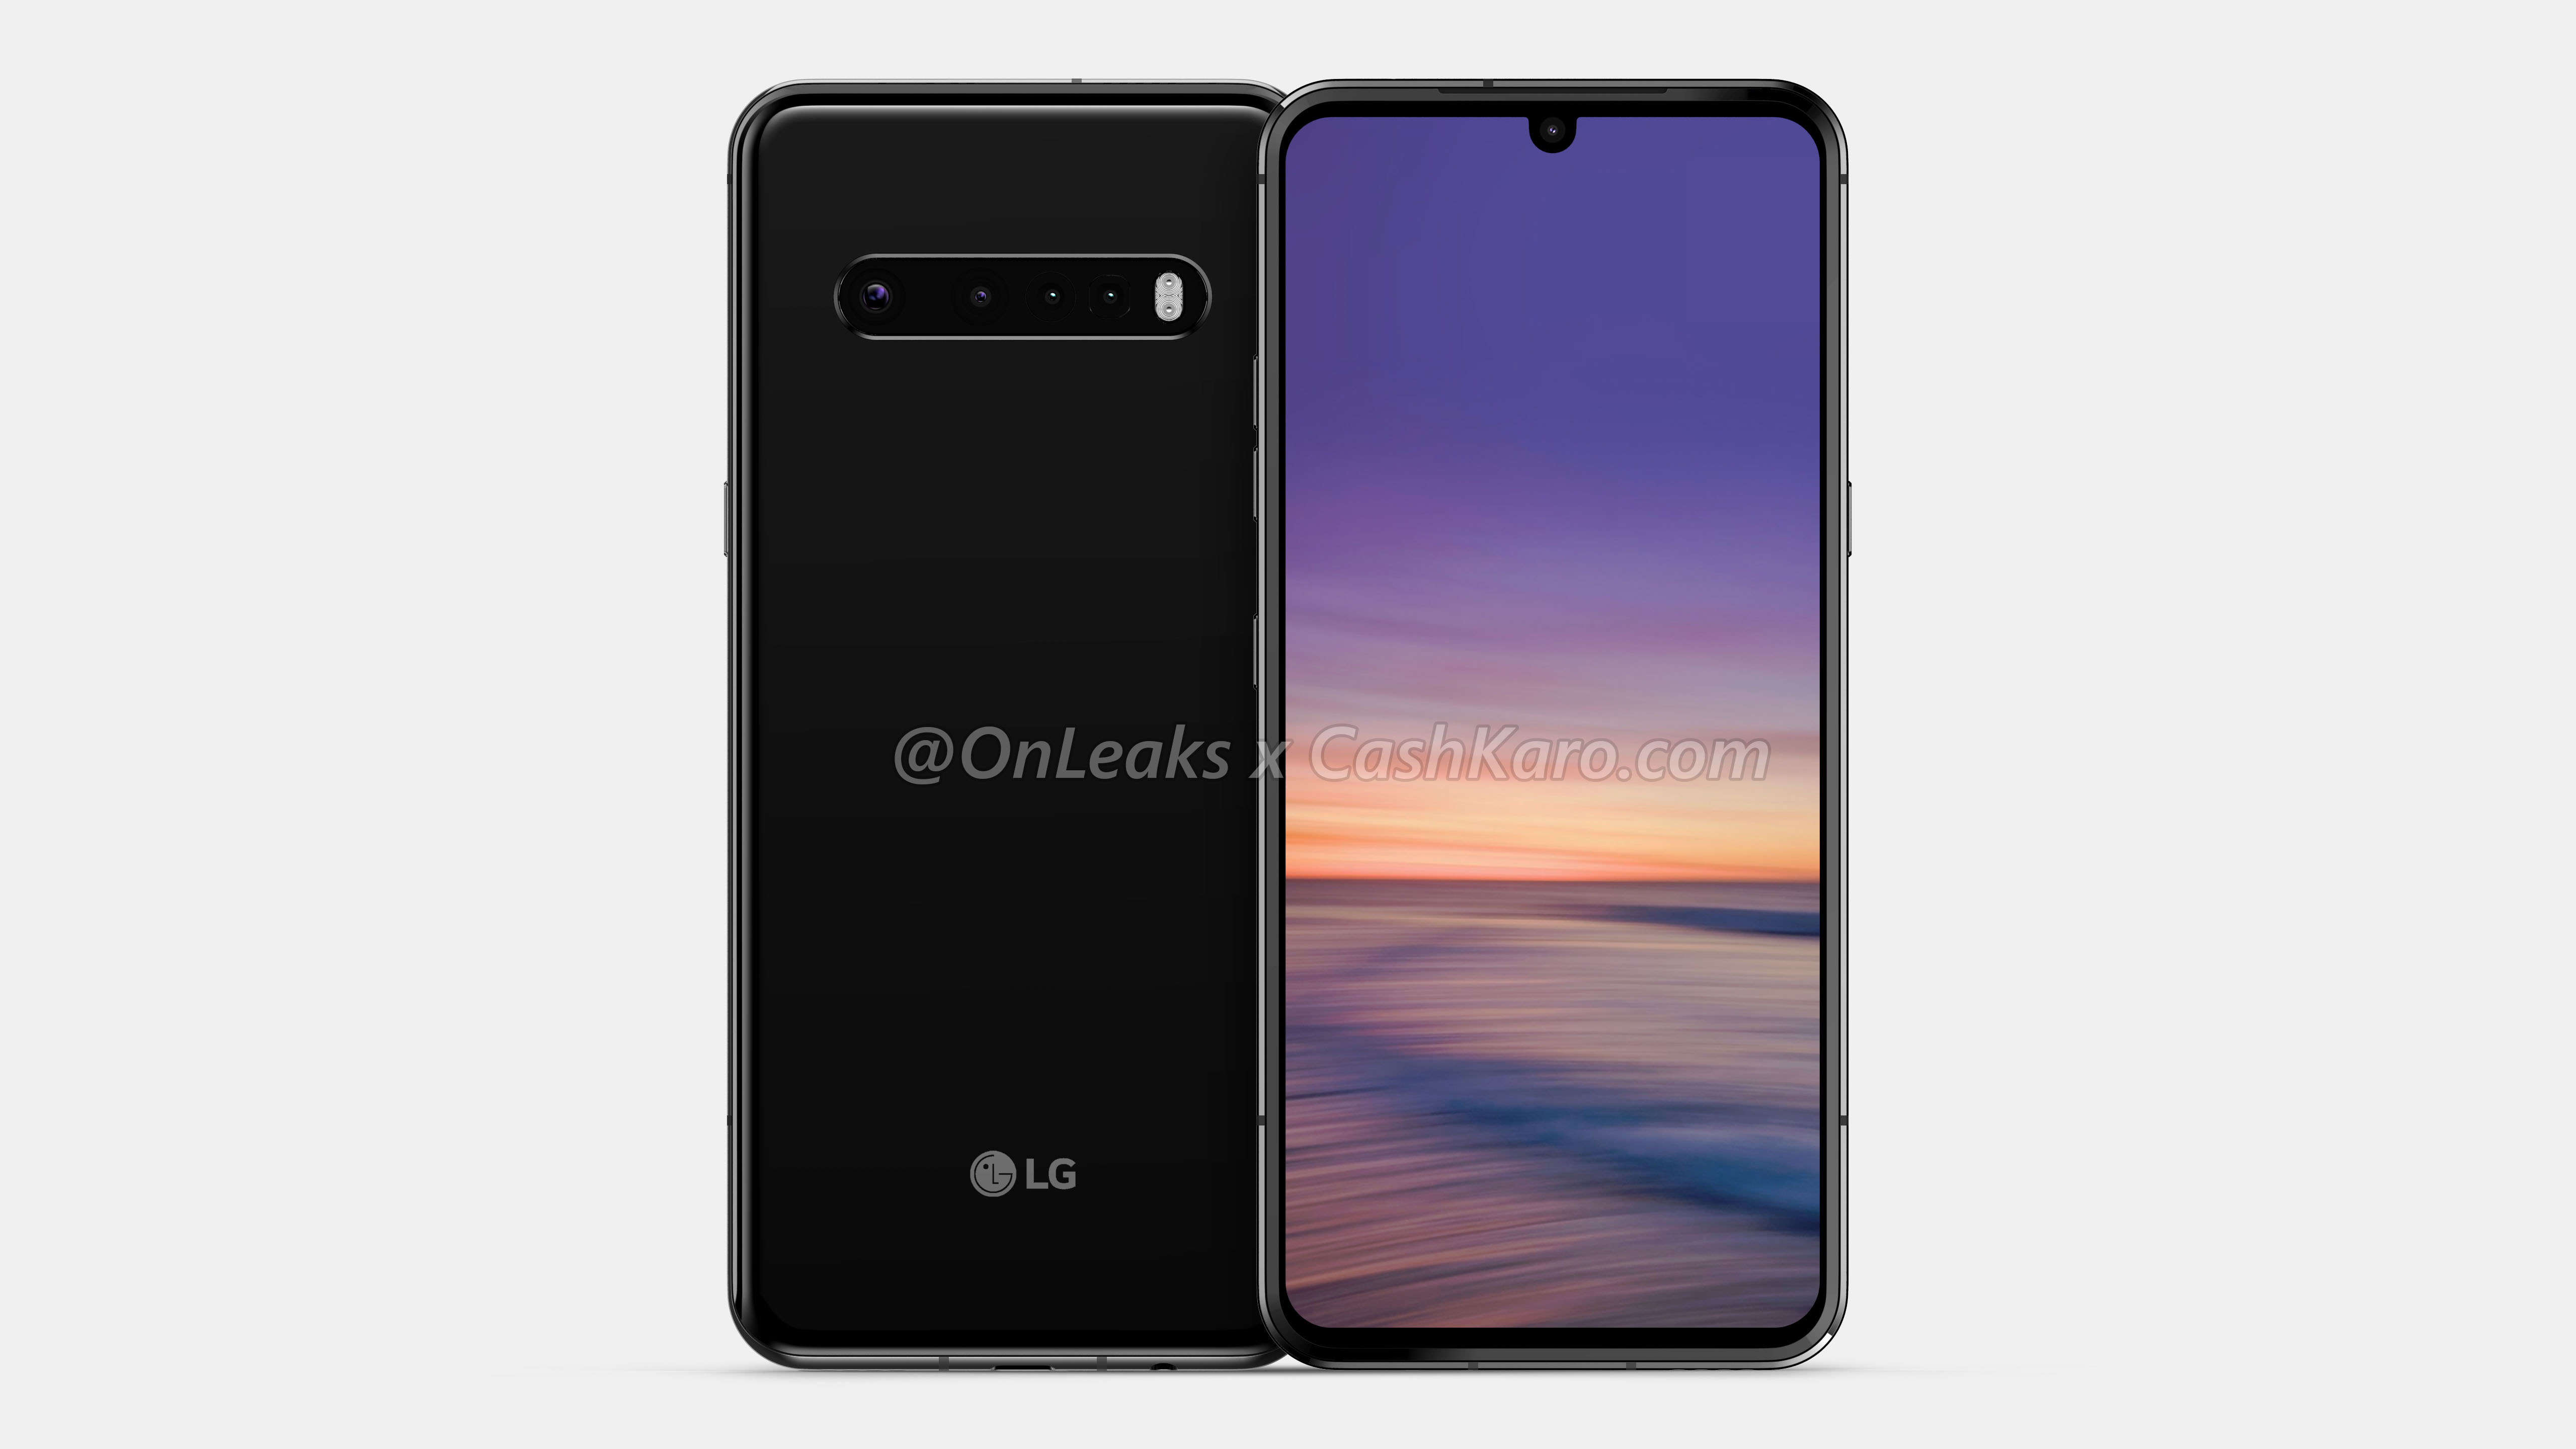 LG G9 lộ ảnh render với thiết kế màn hình giọt nước, vân tay trong màn hình, 4 camera sau, có jack 3.5mm